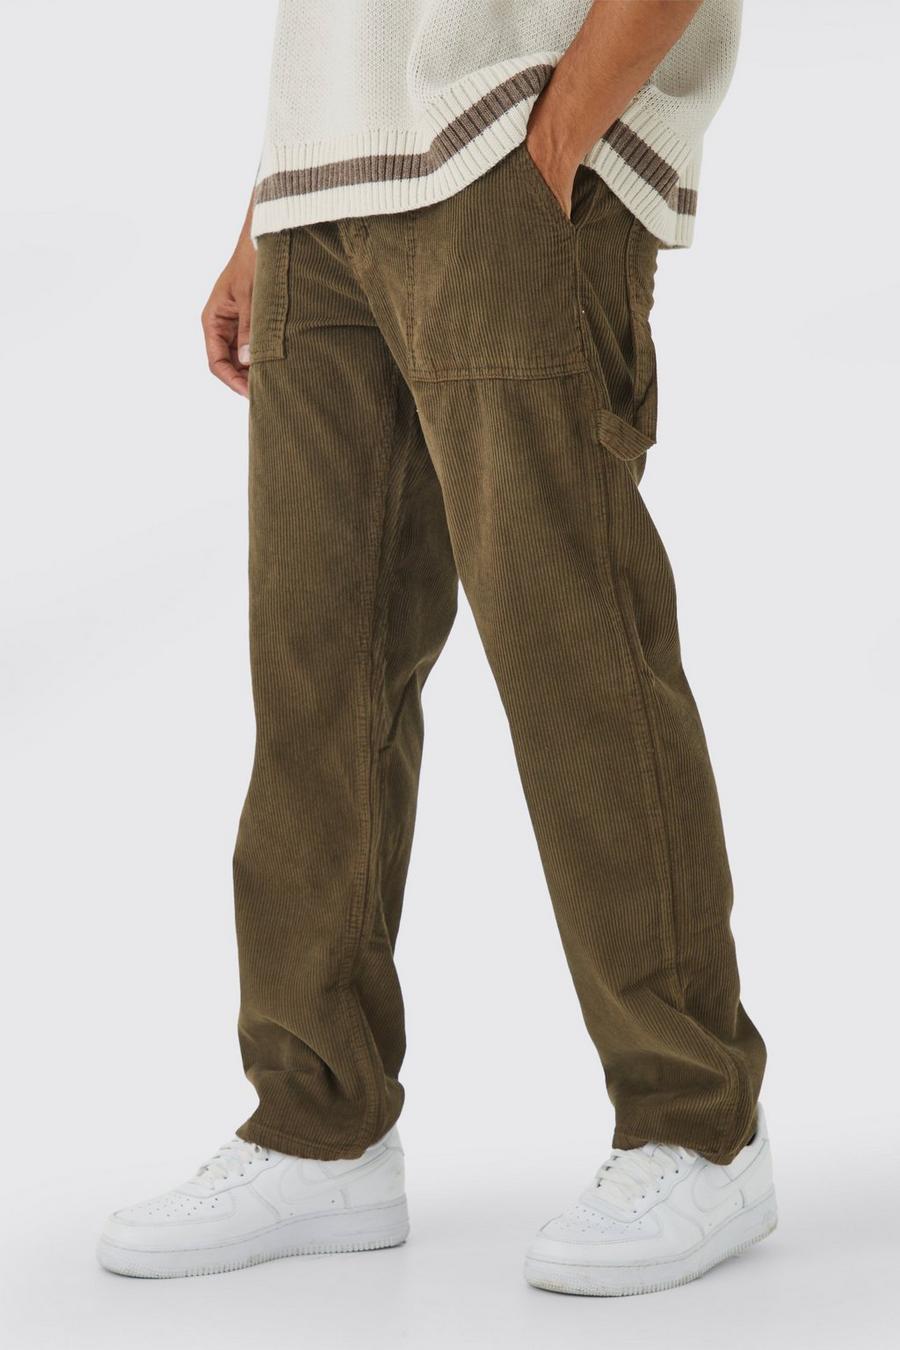 Pantaloni stile Carpenter rilassati in velluto a coste, Brown marrón